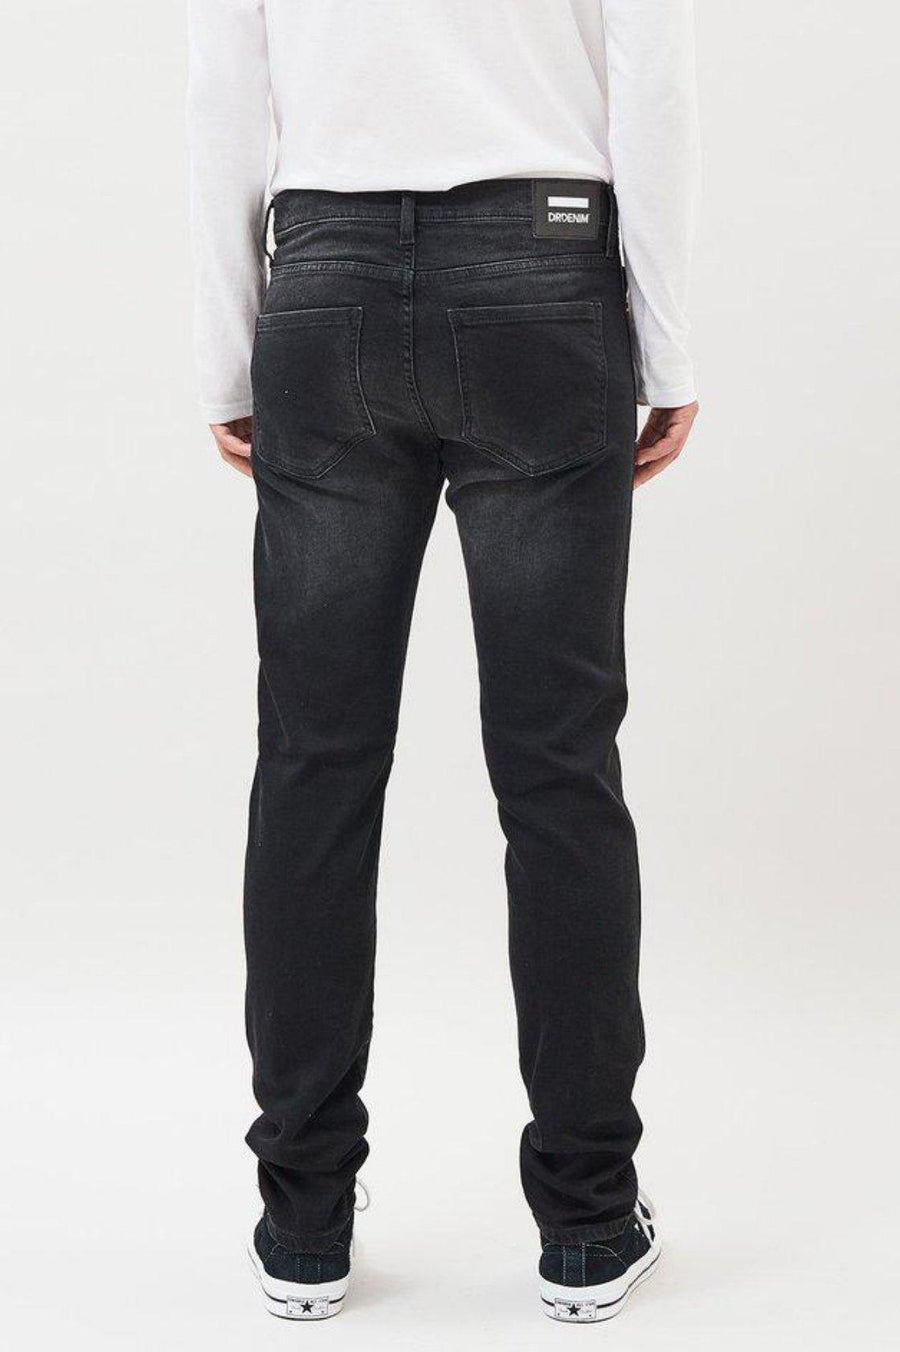 Snap Jeans - Ash Black - Dr Denim Jeans - Australia & NZ